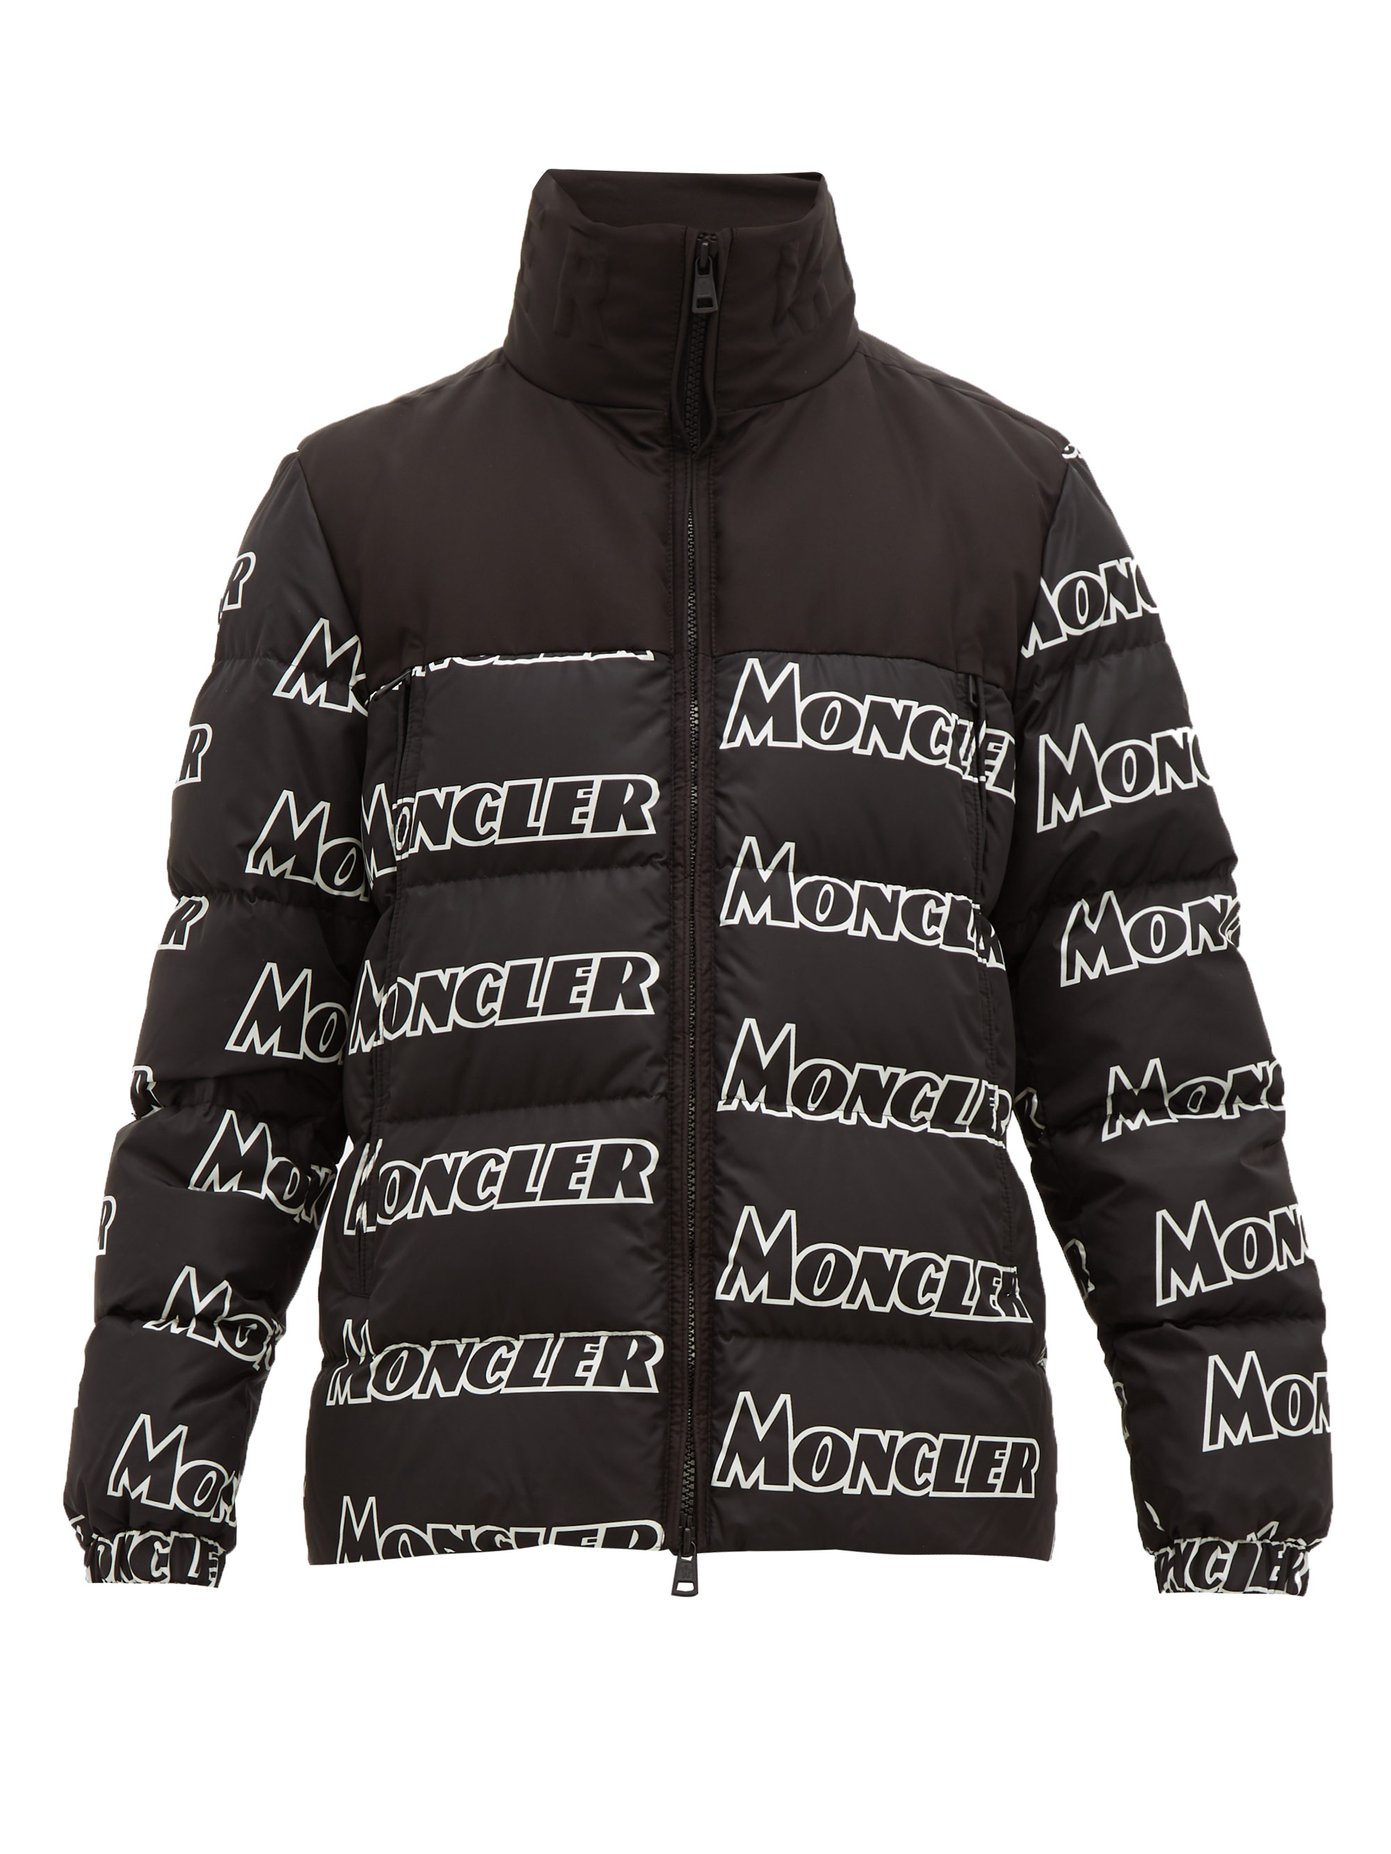 moncler printed jacket